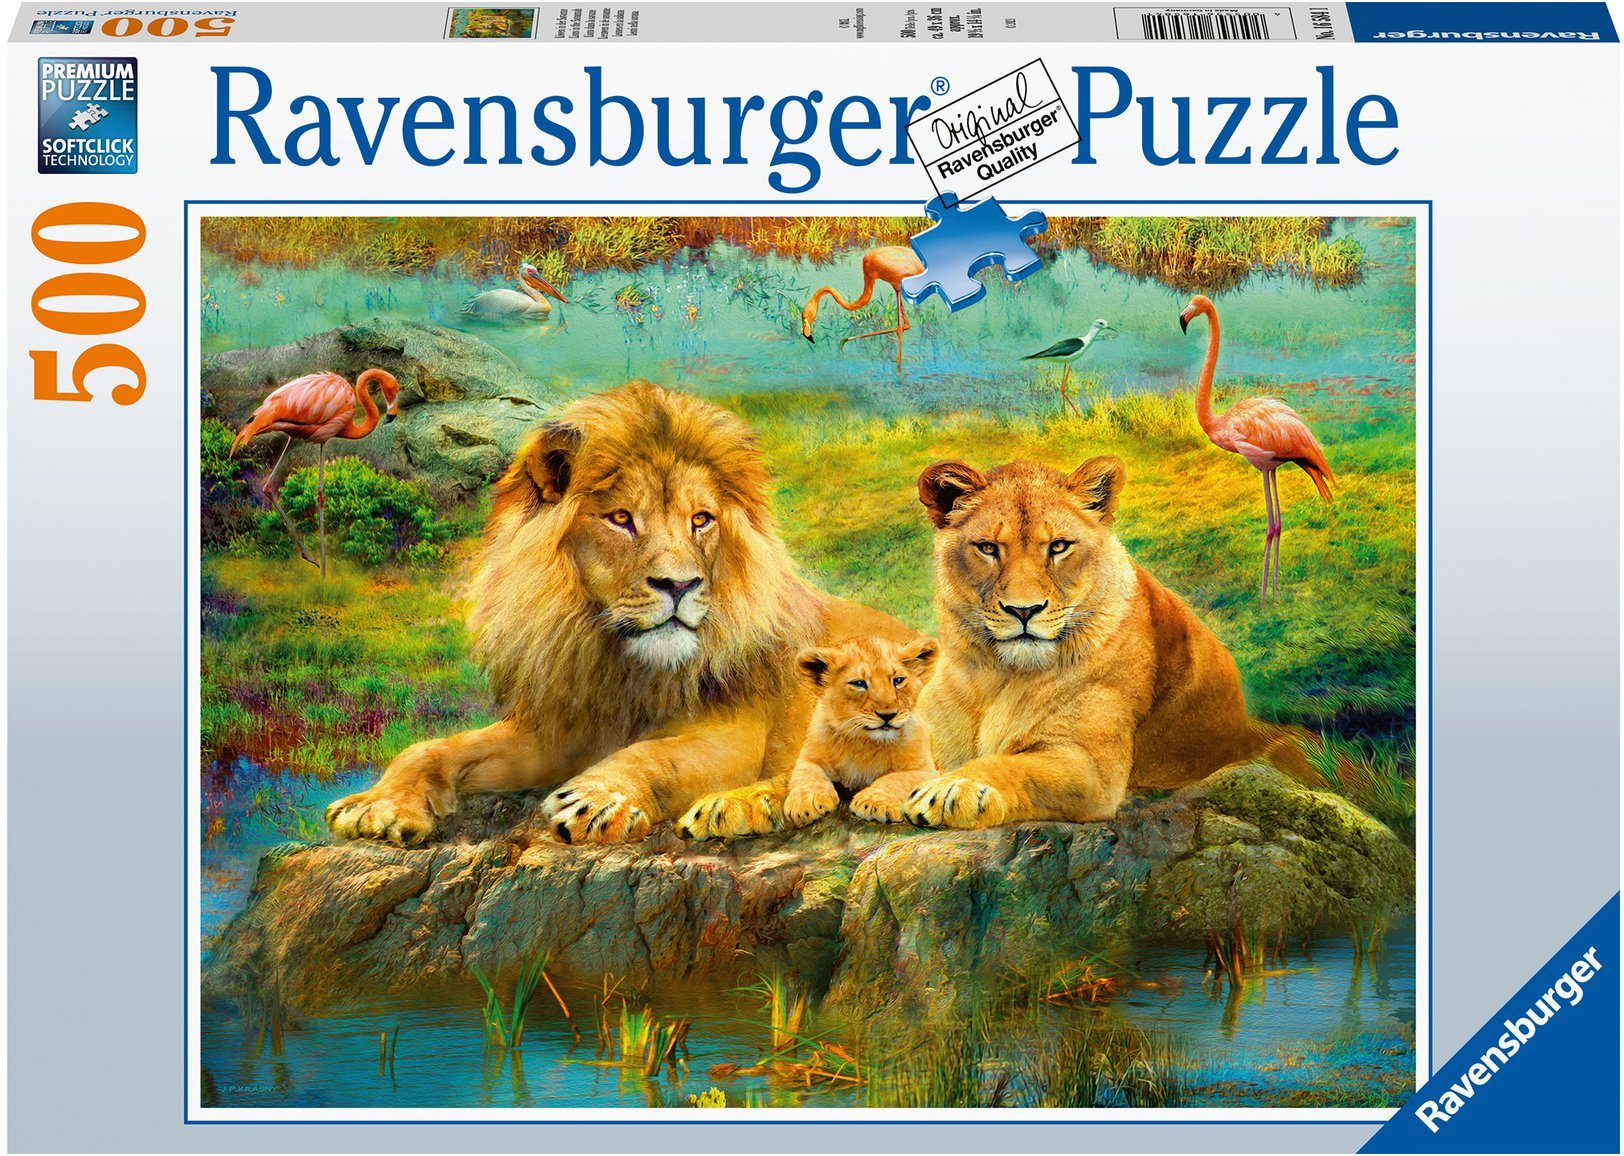 Puzzle Löwen Savanne, - Germany, in - FSC® in Puzzleteile, weltweit Wald schützt Ravensburger Made 500 der